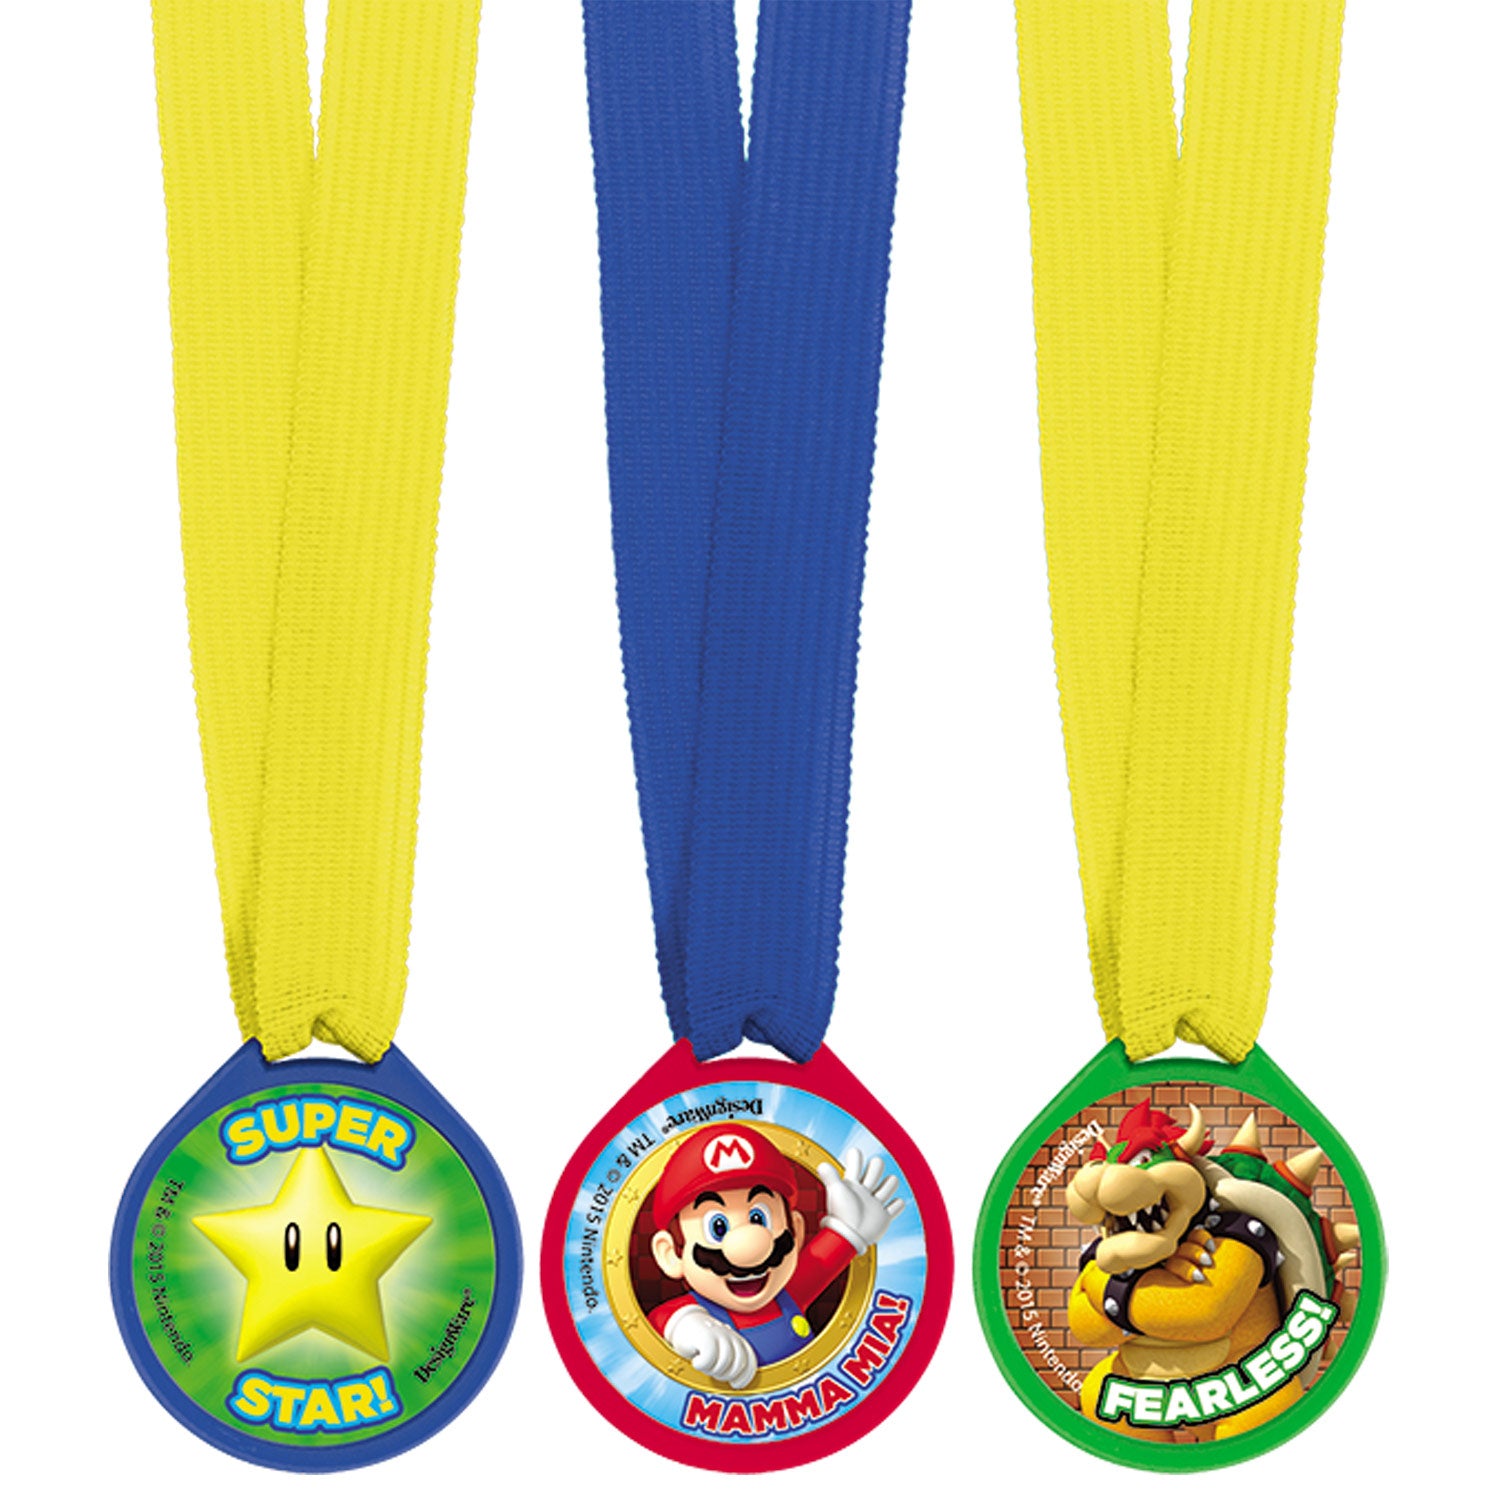 Super Mario Award Medals 12pcs - Party Centre